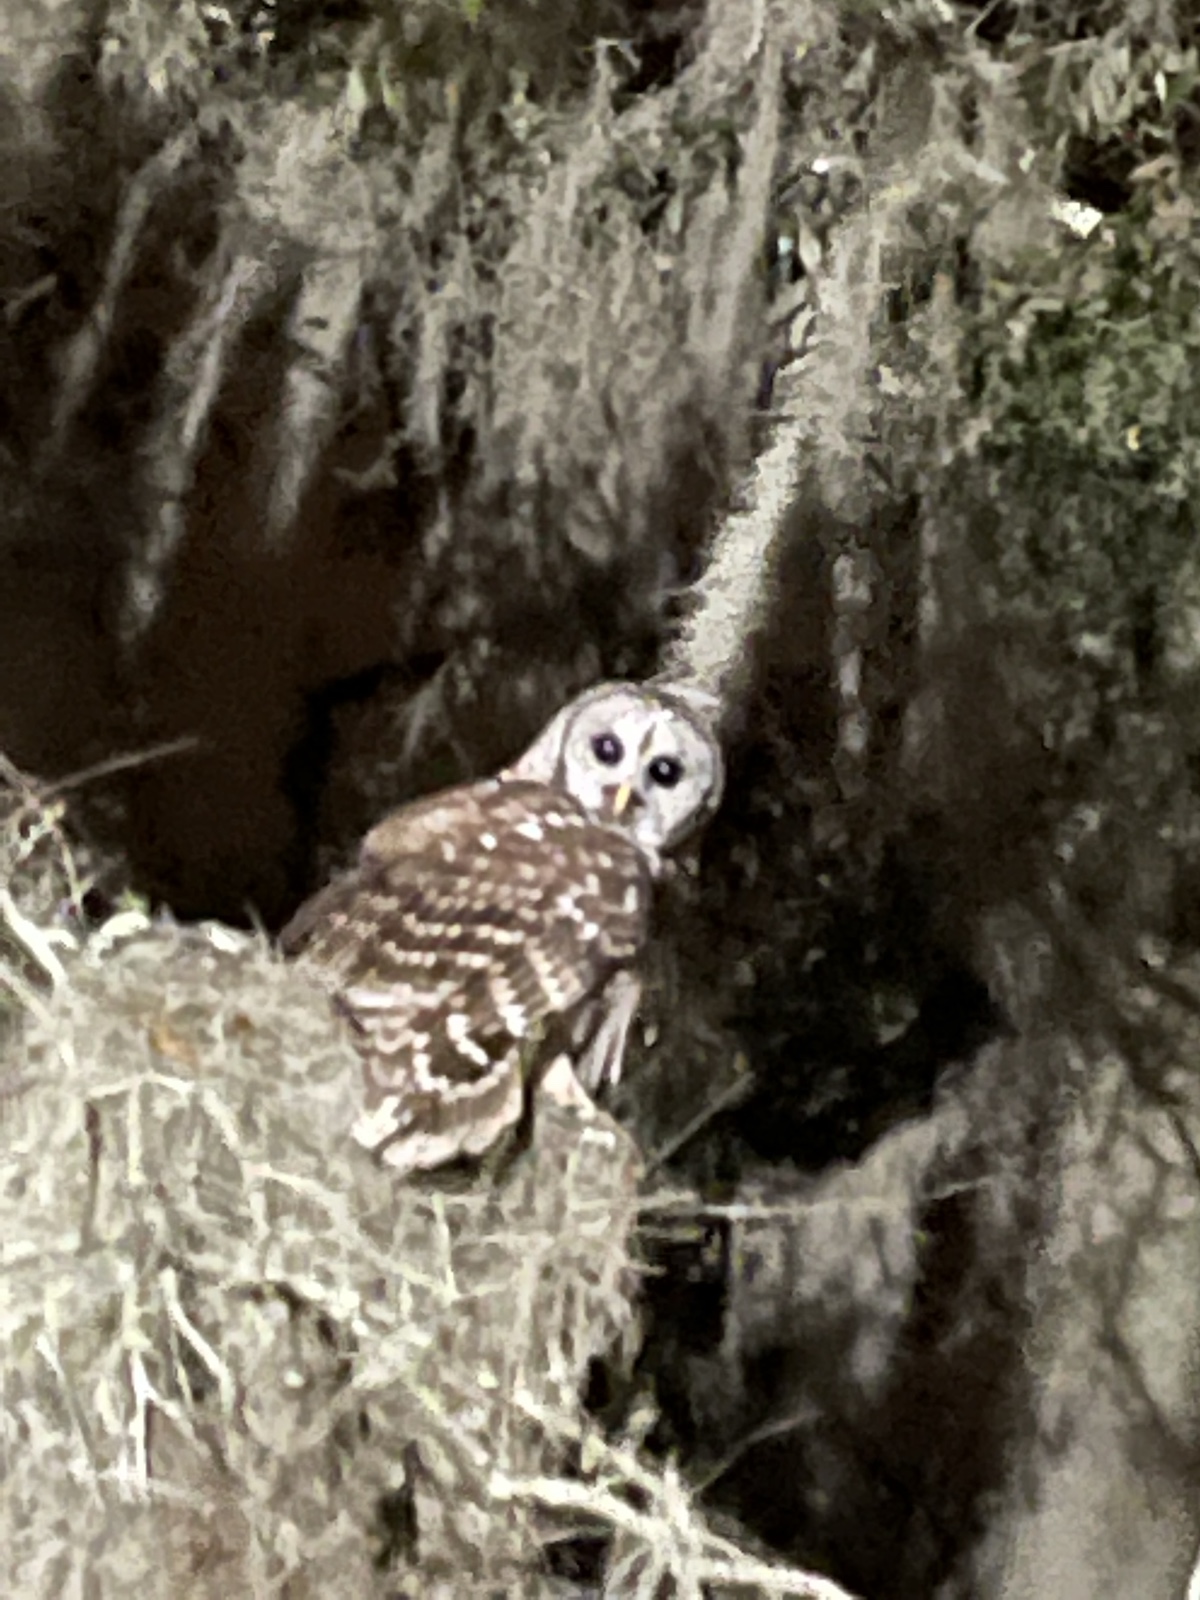 Barred owl in the oaks in Ocala